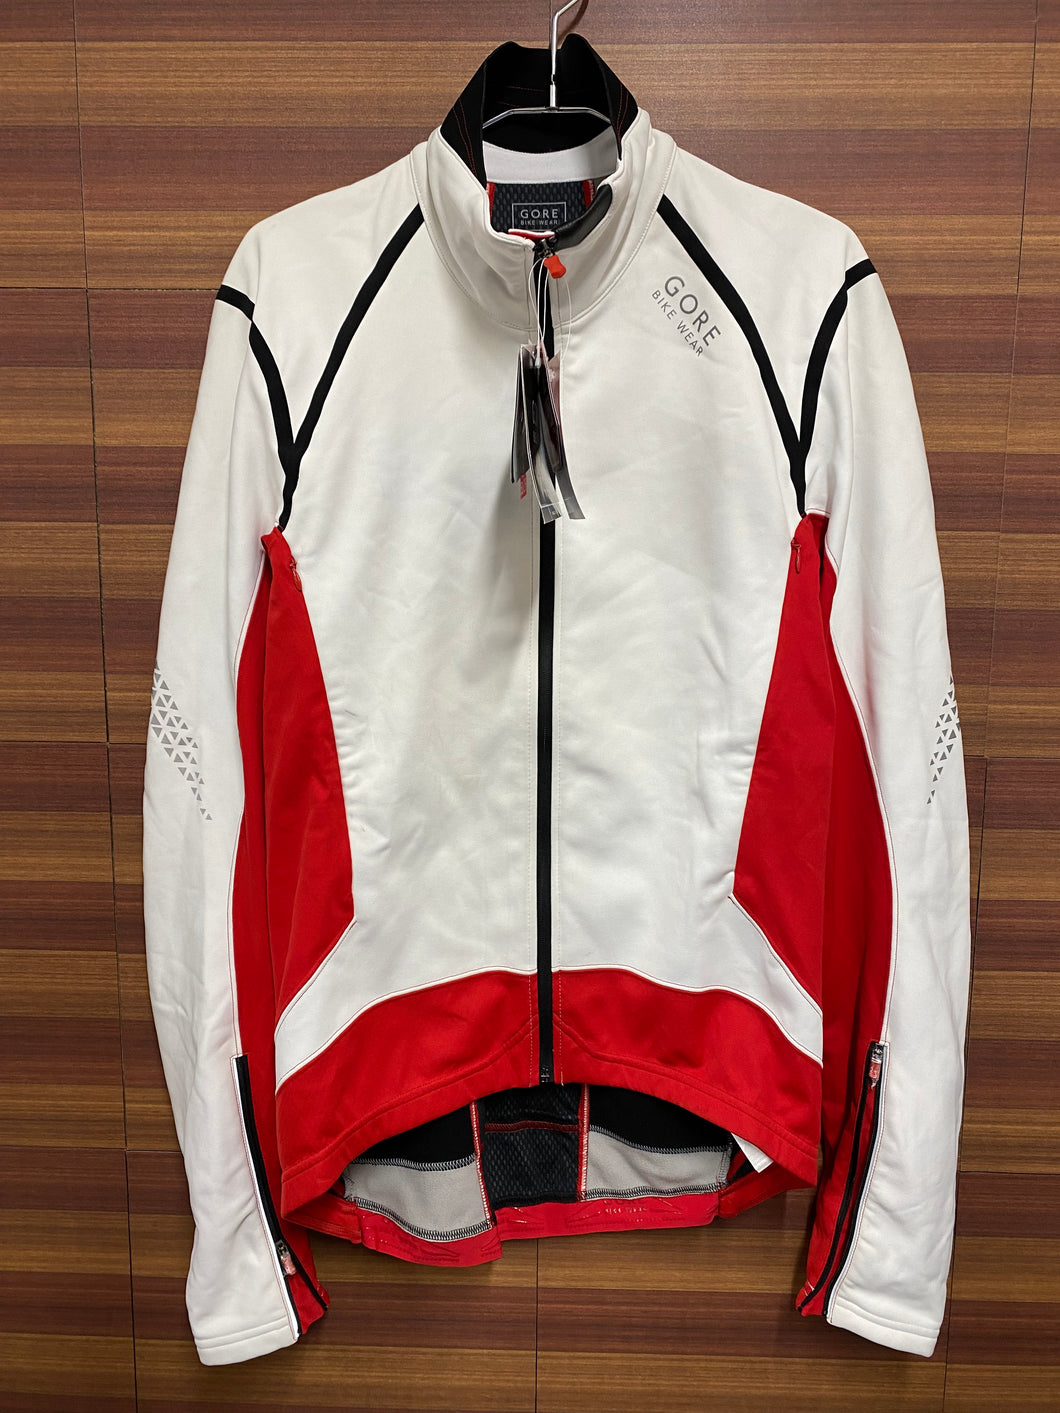 GI245 ゴアバイクウェア GORE BIKE WEAR XENON 20 長袖サイクルジャケット 赤白 M